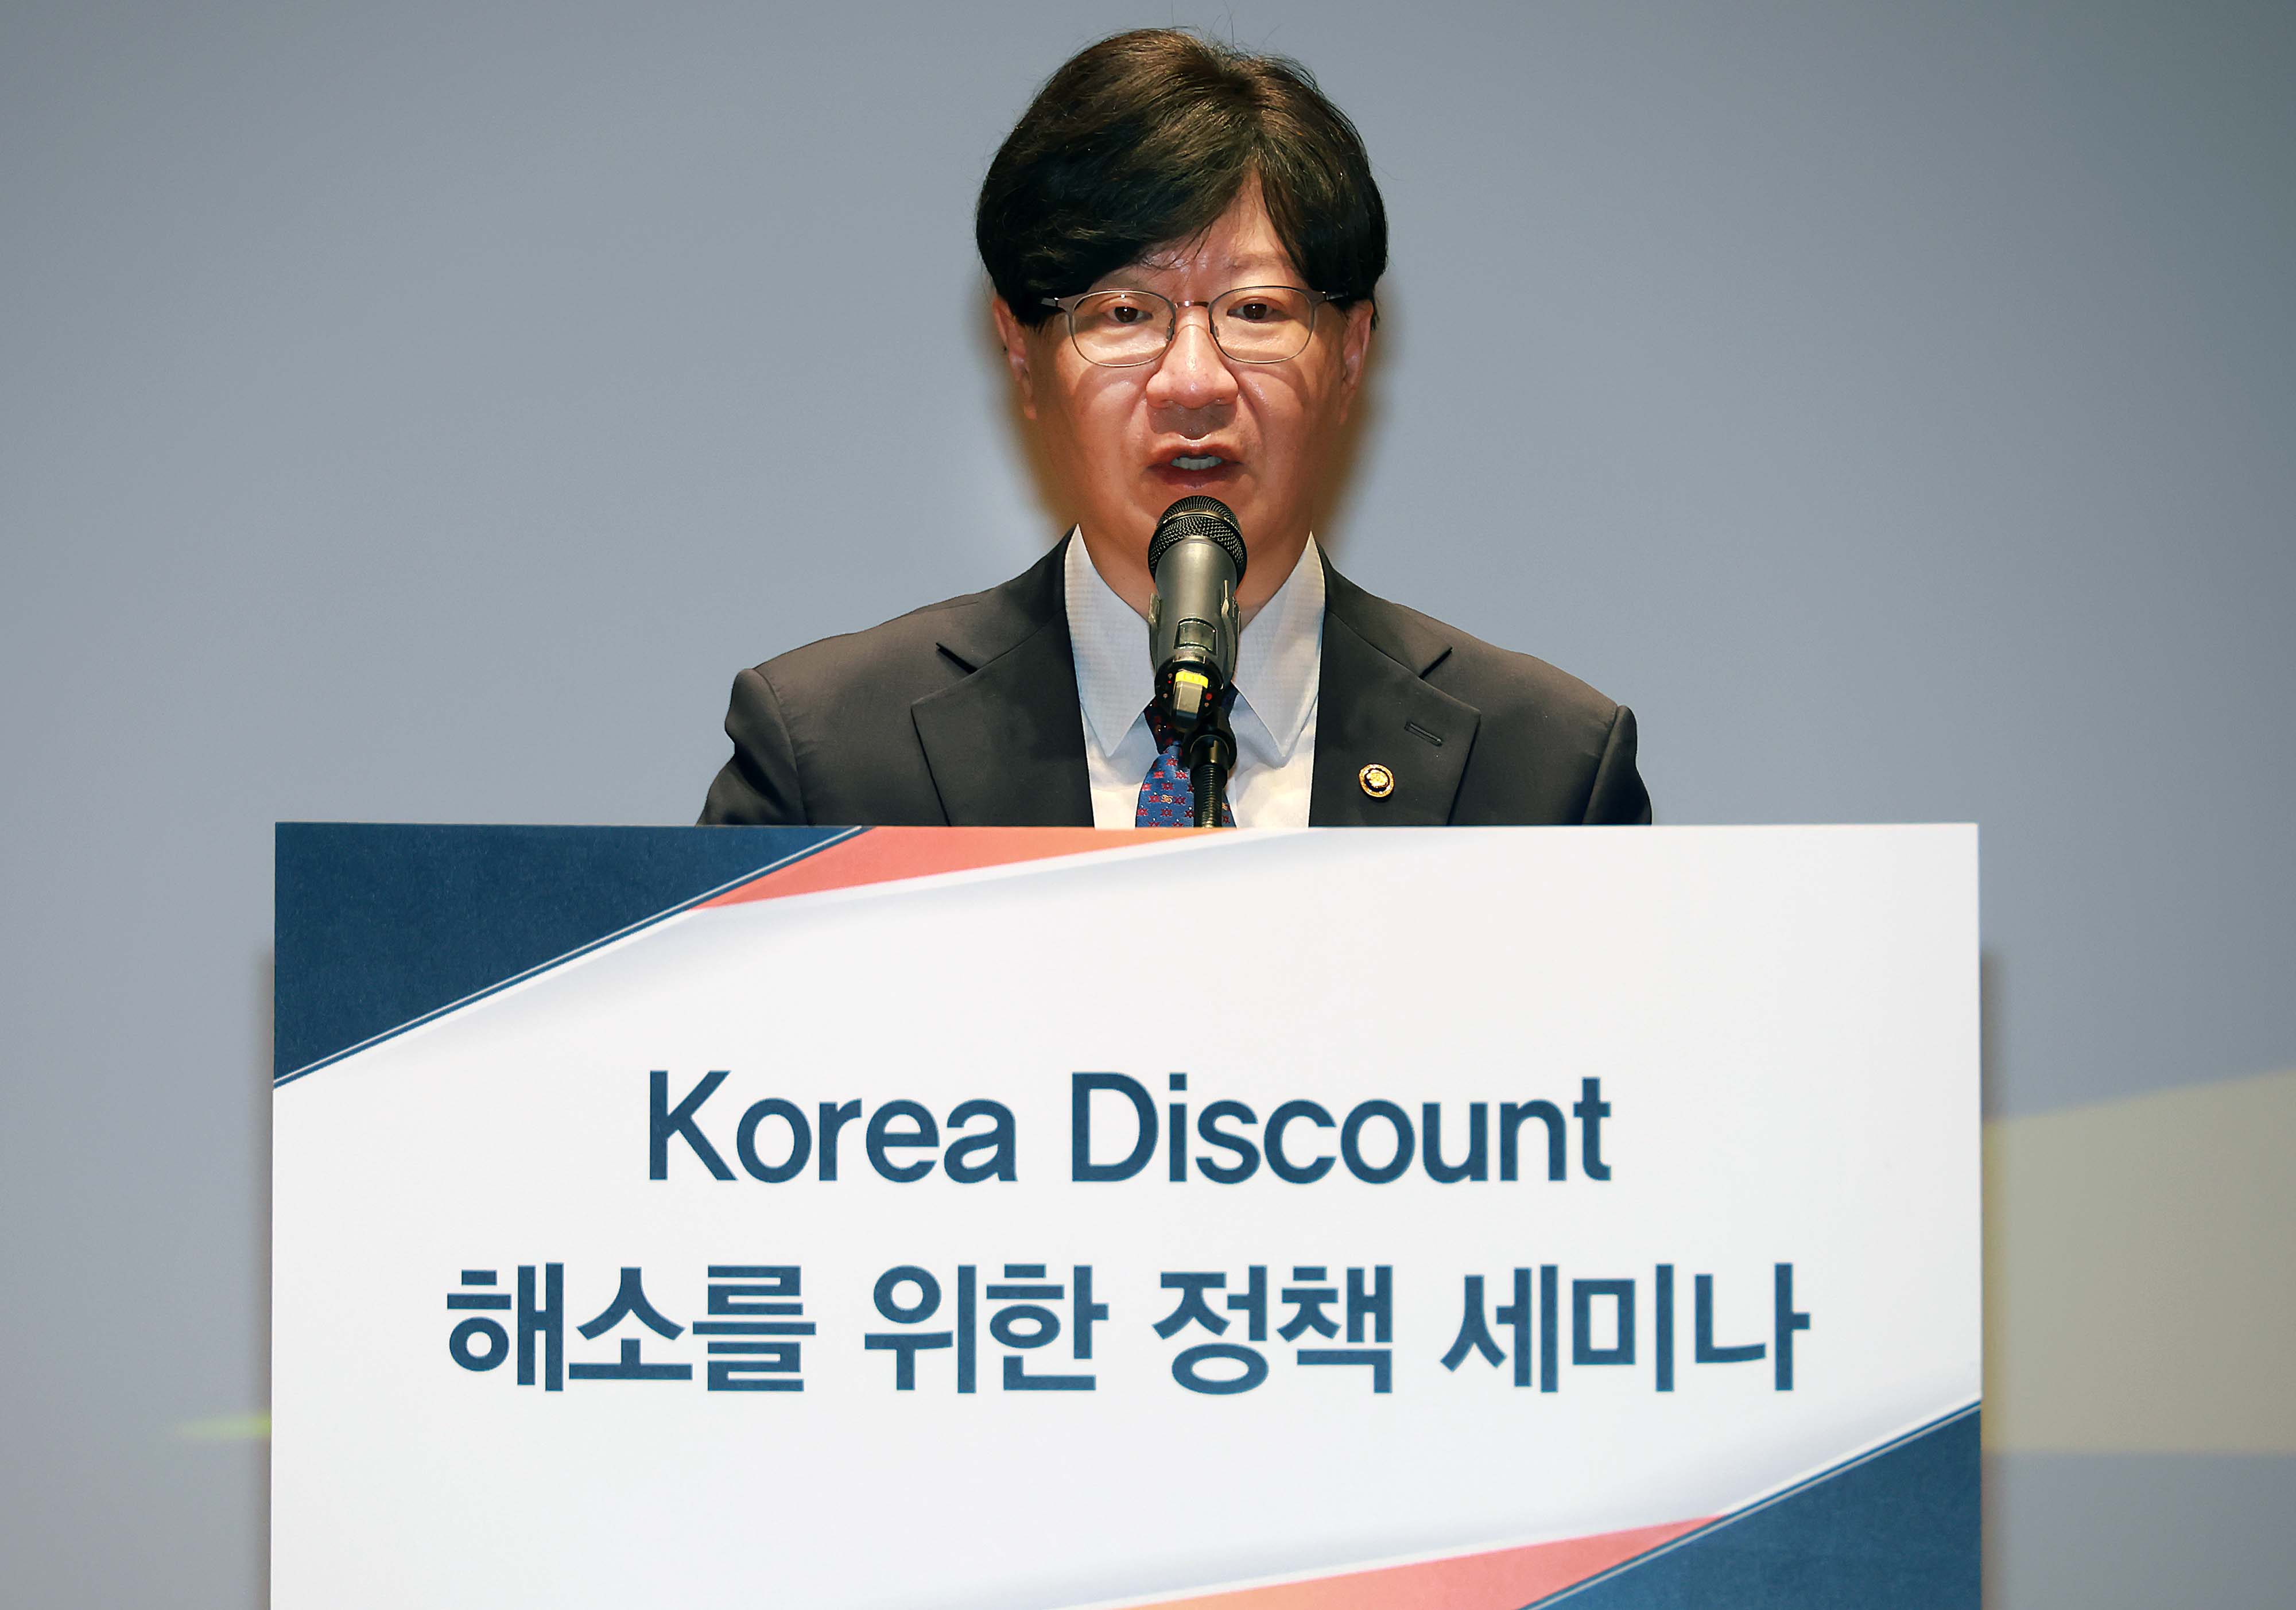 코리아 디스카운트 해소를 위한 정책세미나 개최3